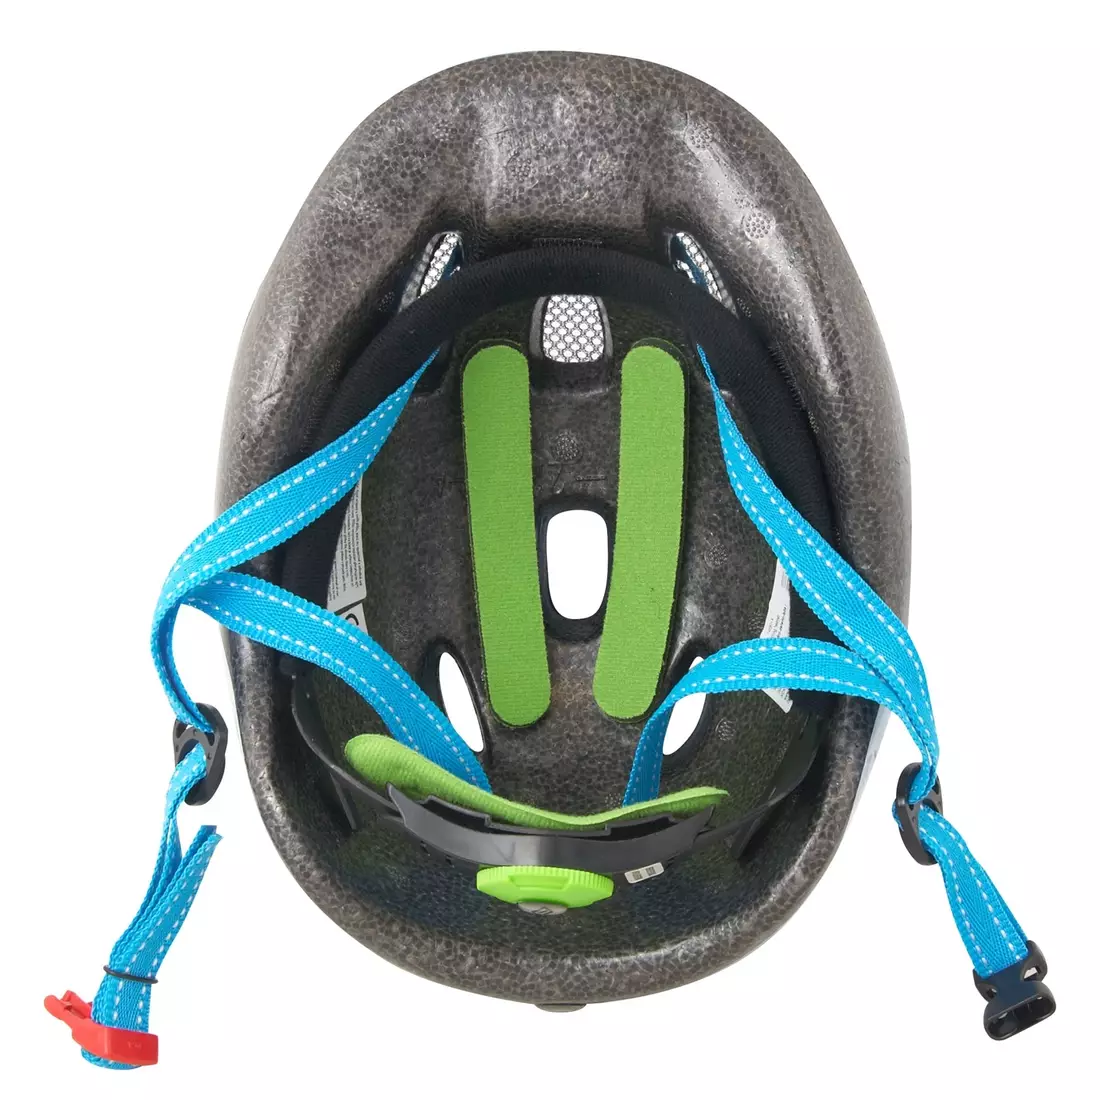 FORCE dětská cyklistická helma FUN STRIPES blue